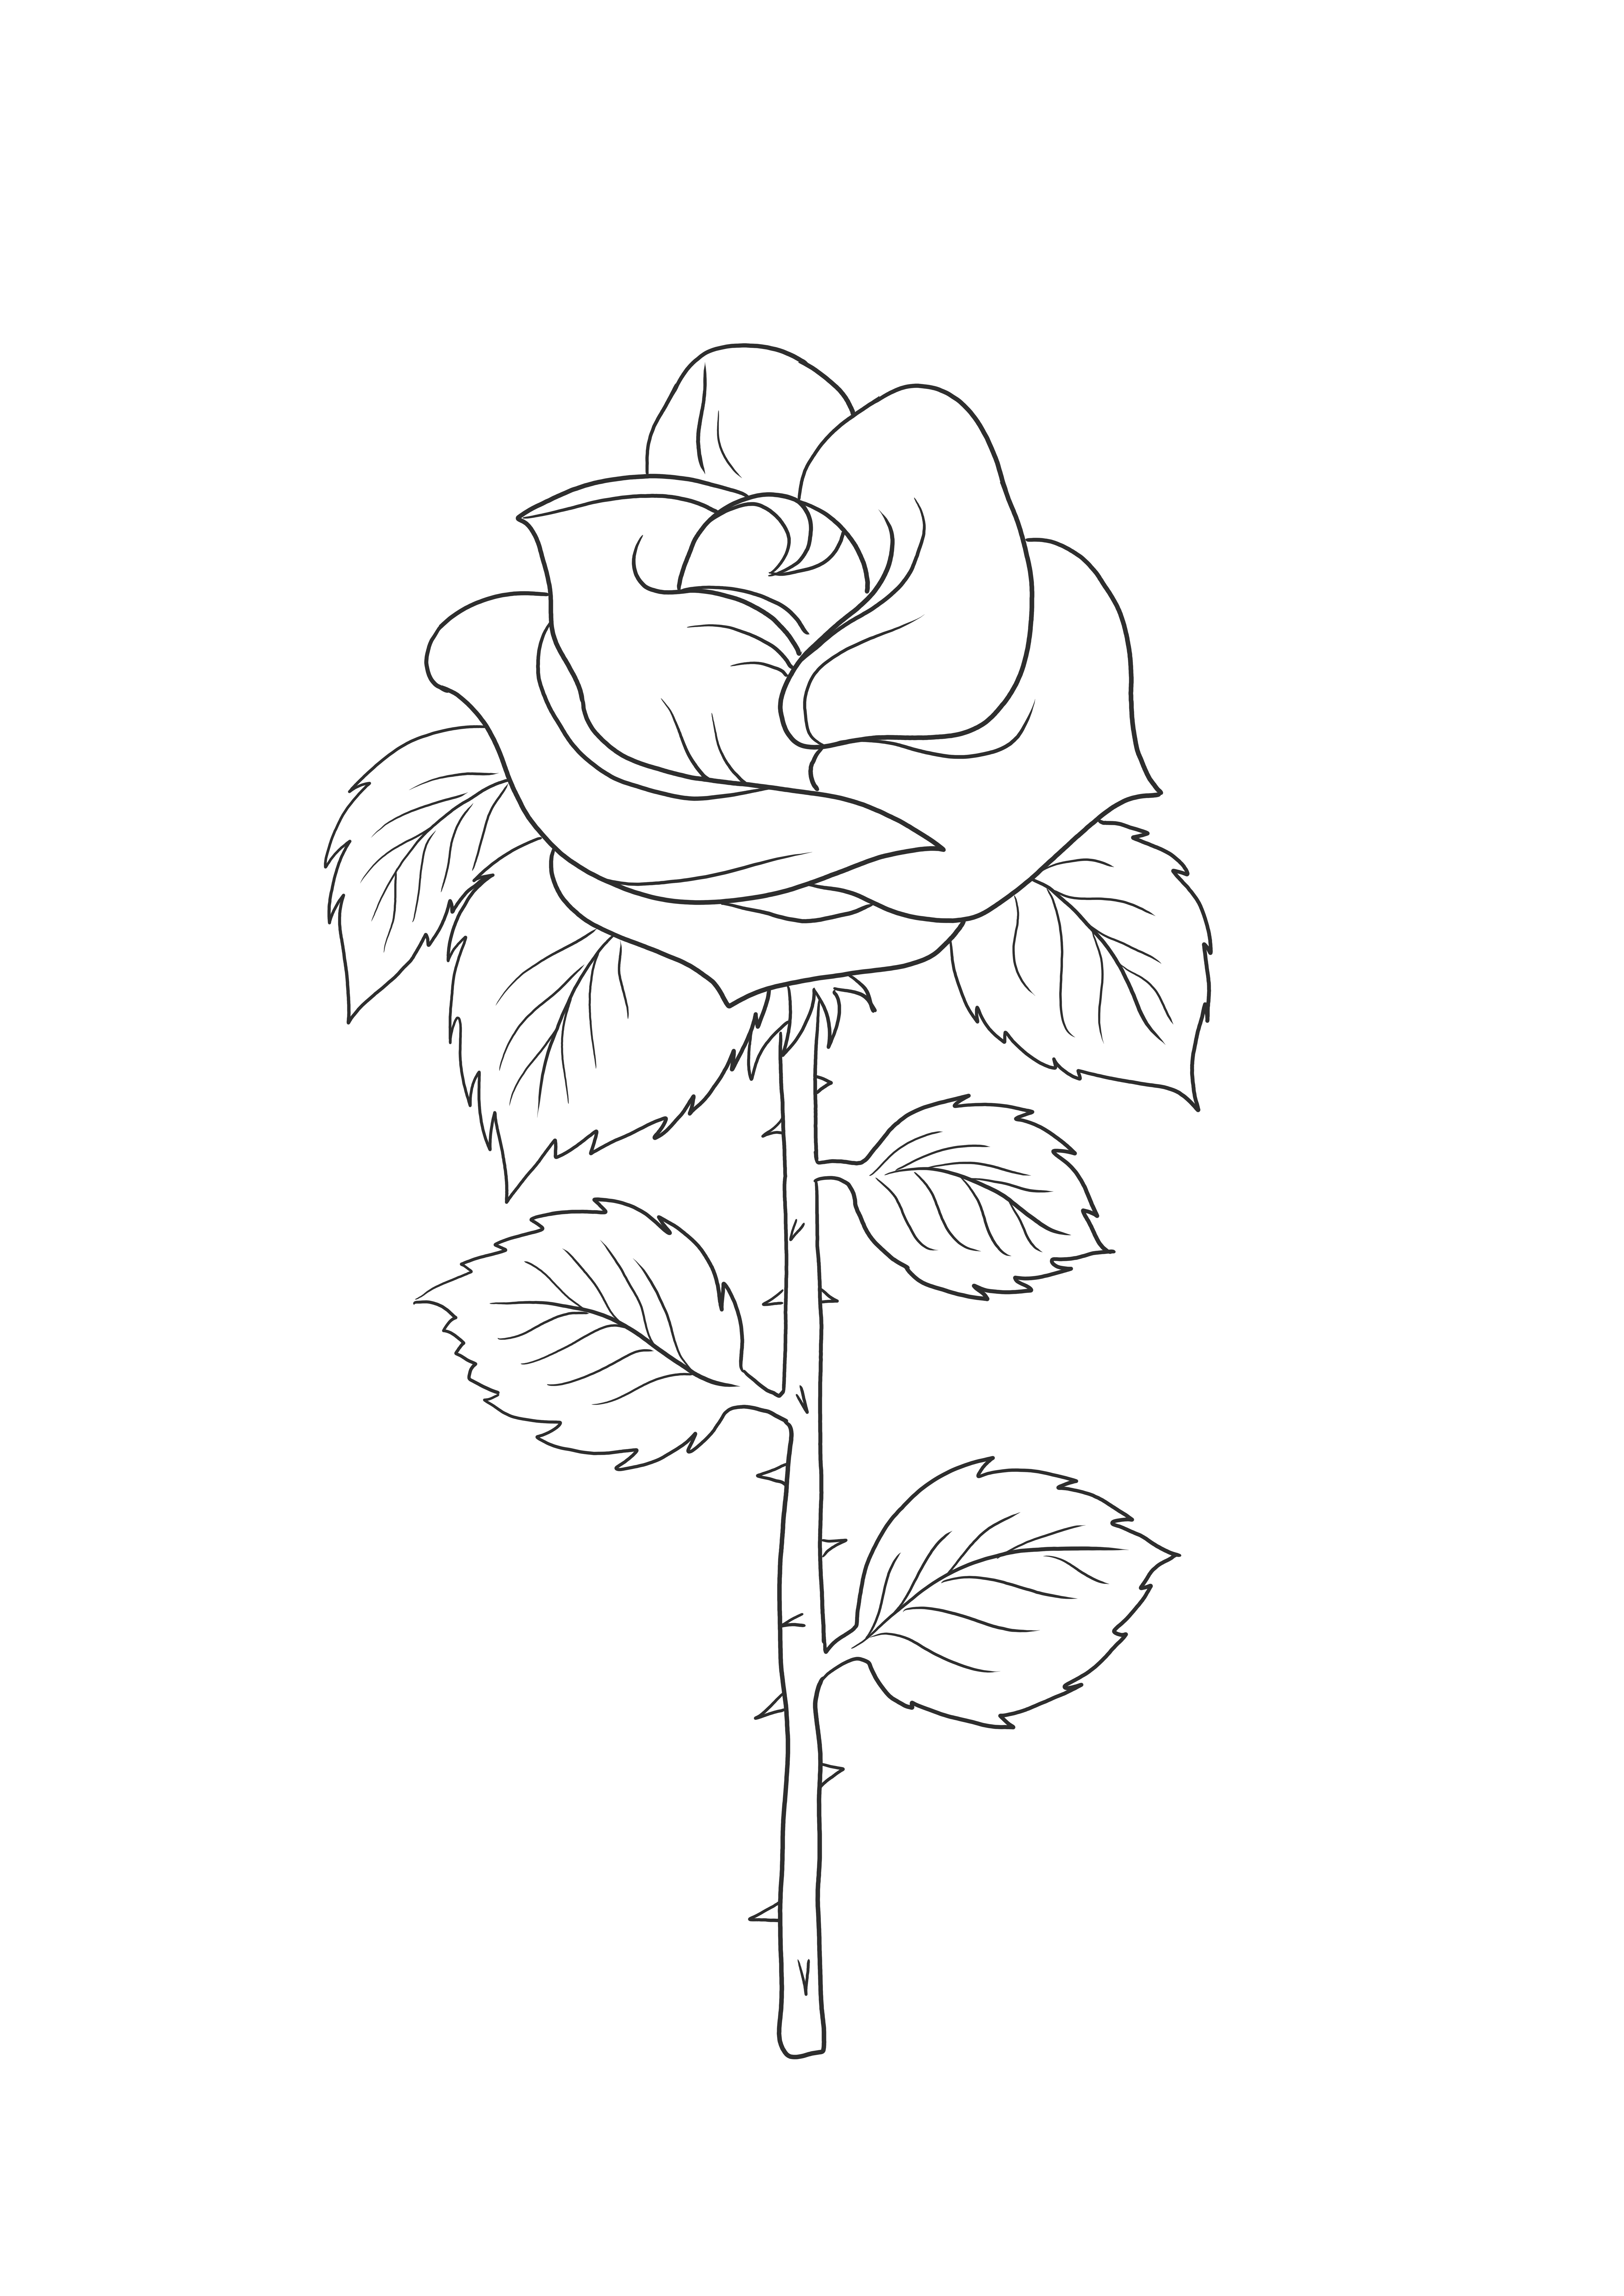 Színező kép egy egyszerű rózsa-nagyszerű eszközről a növényekről való tanításhoz